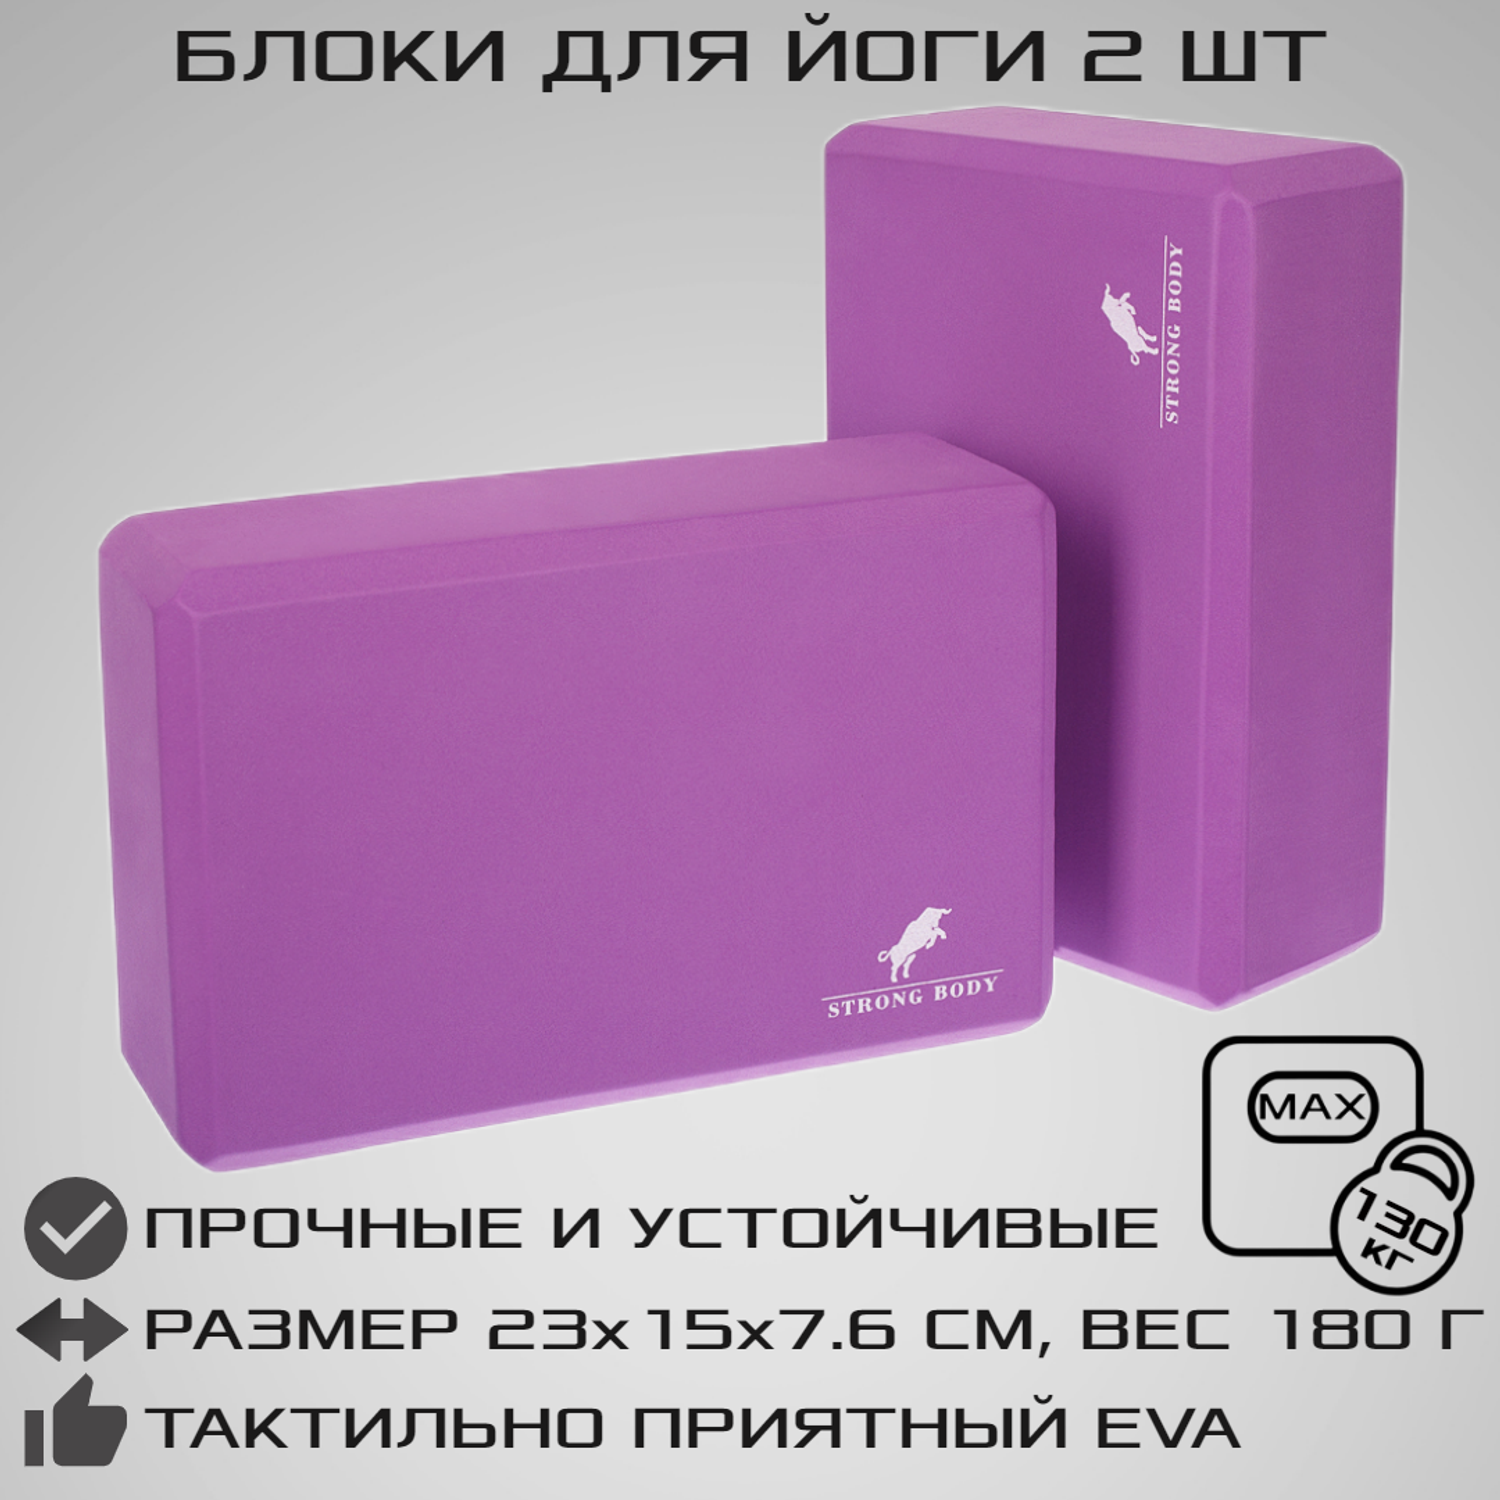 Блоки для йоги 2 шт. STRONG BODY фиолетовые - фото 1